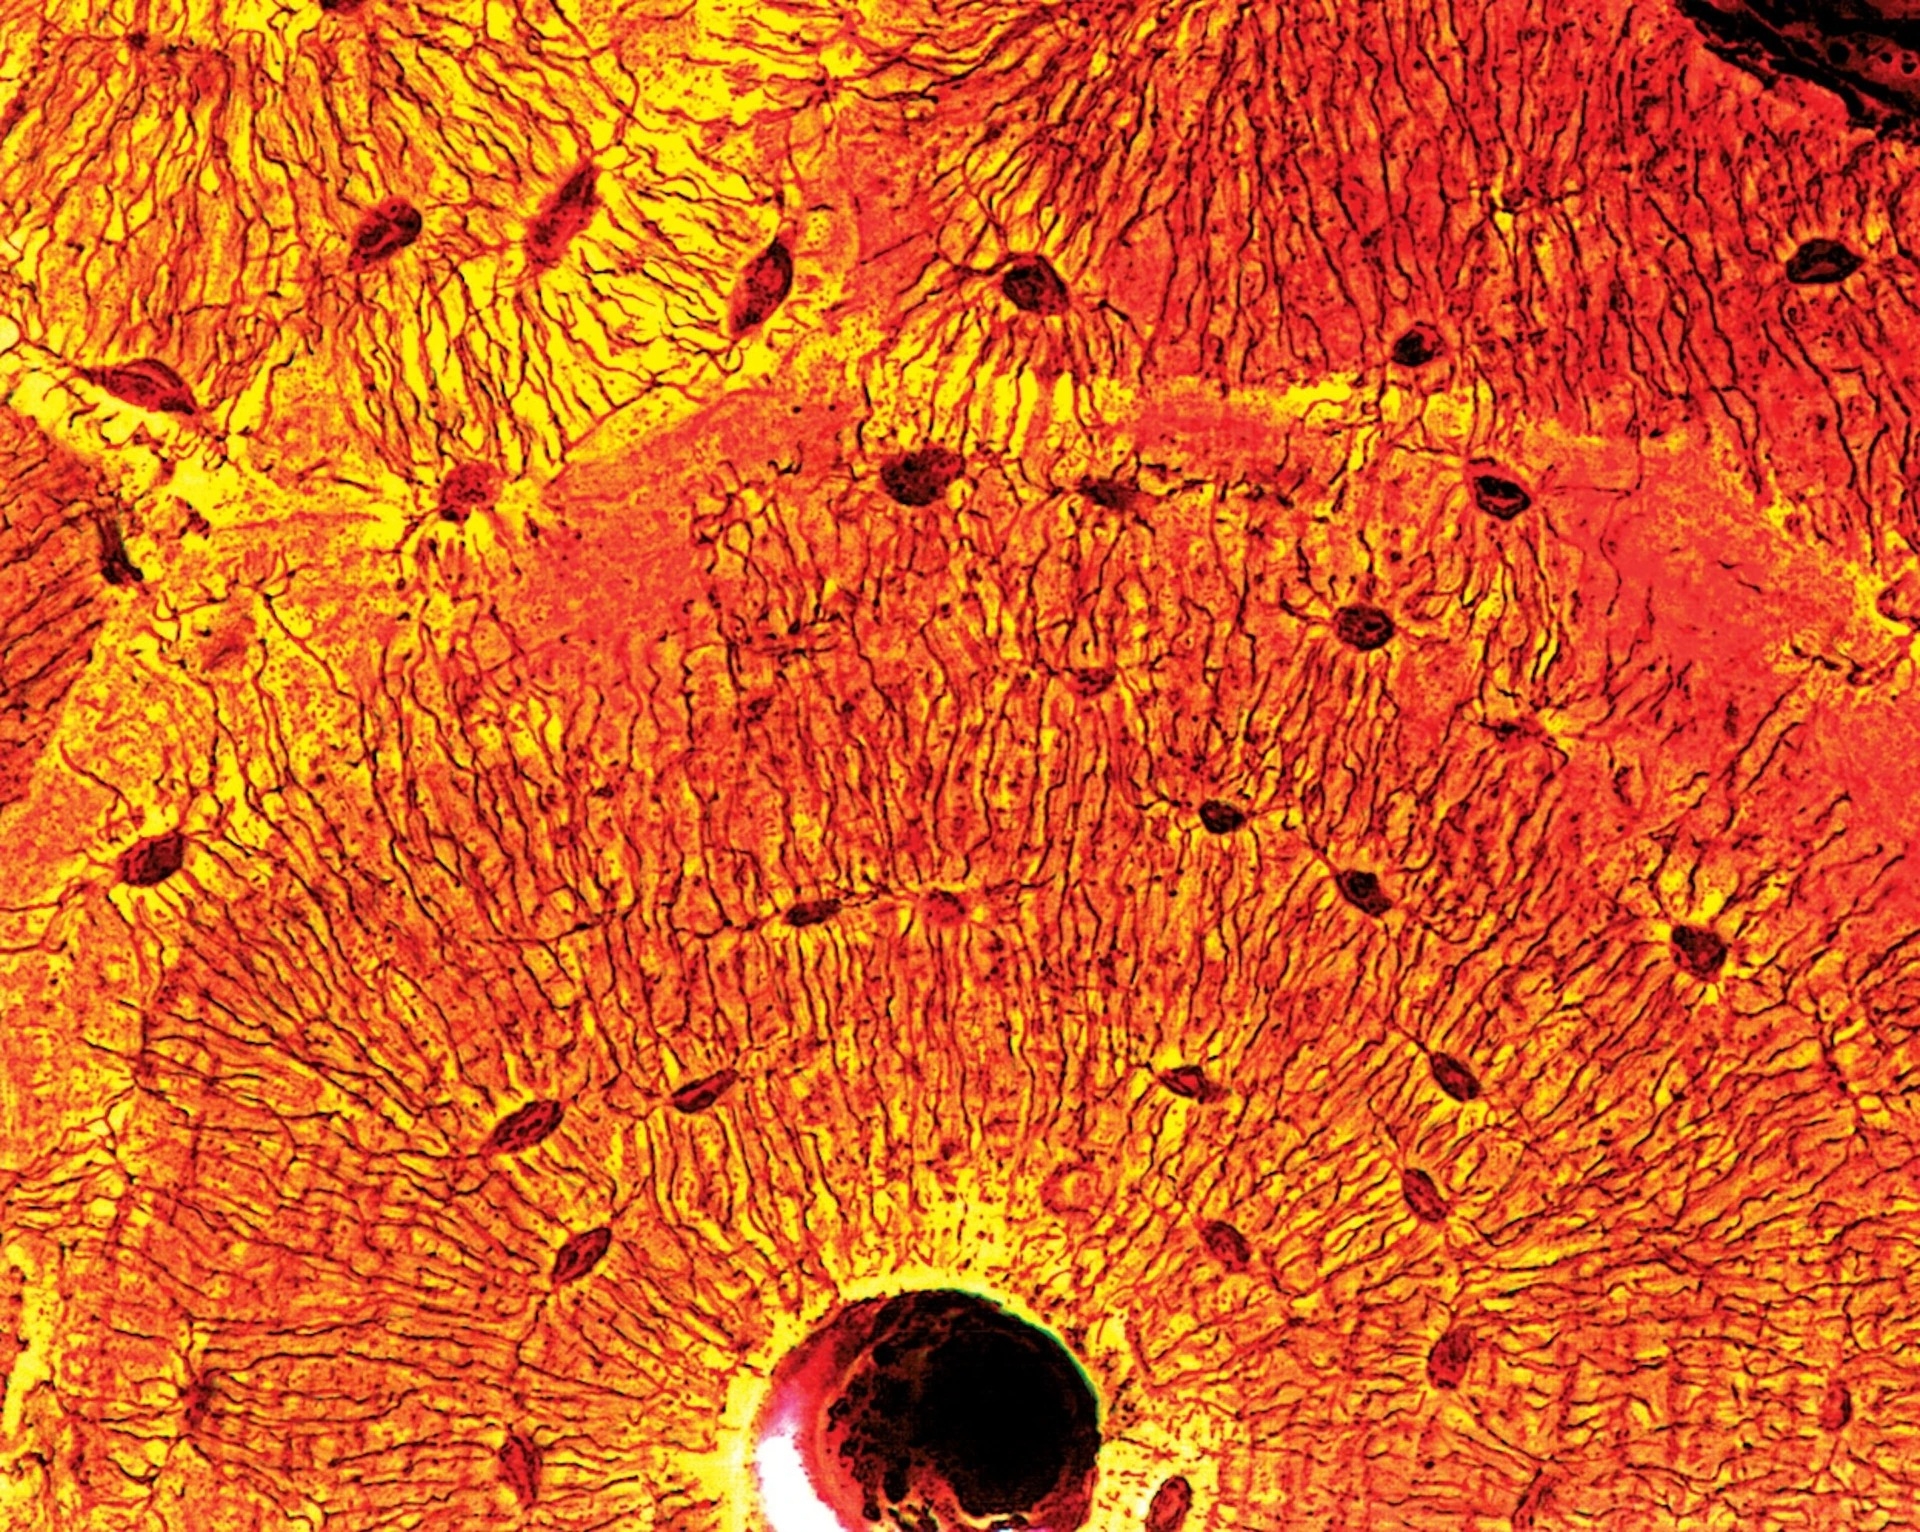 在這幅放大的緻密骨（compact bone）斷面影像中，骨細胞（黑點）──跟骨重塑（bone remodeling）有關的細胞──會往外分枝、連結其他細胞。 PHOTOGRAPH BY QUEST, SCIENCE SOURCE 